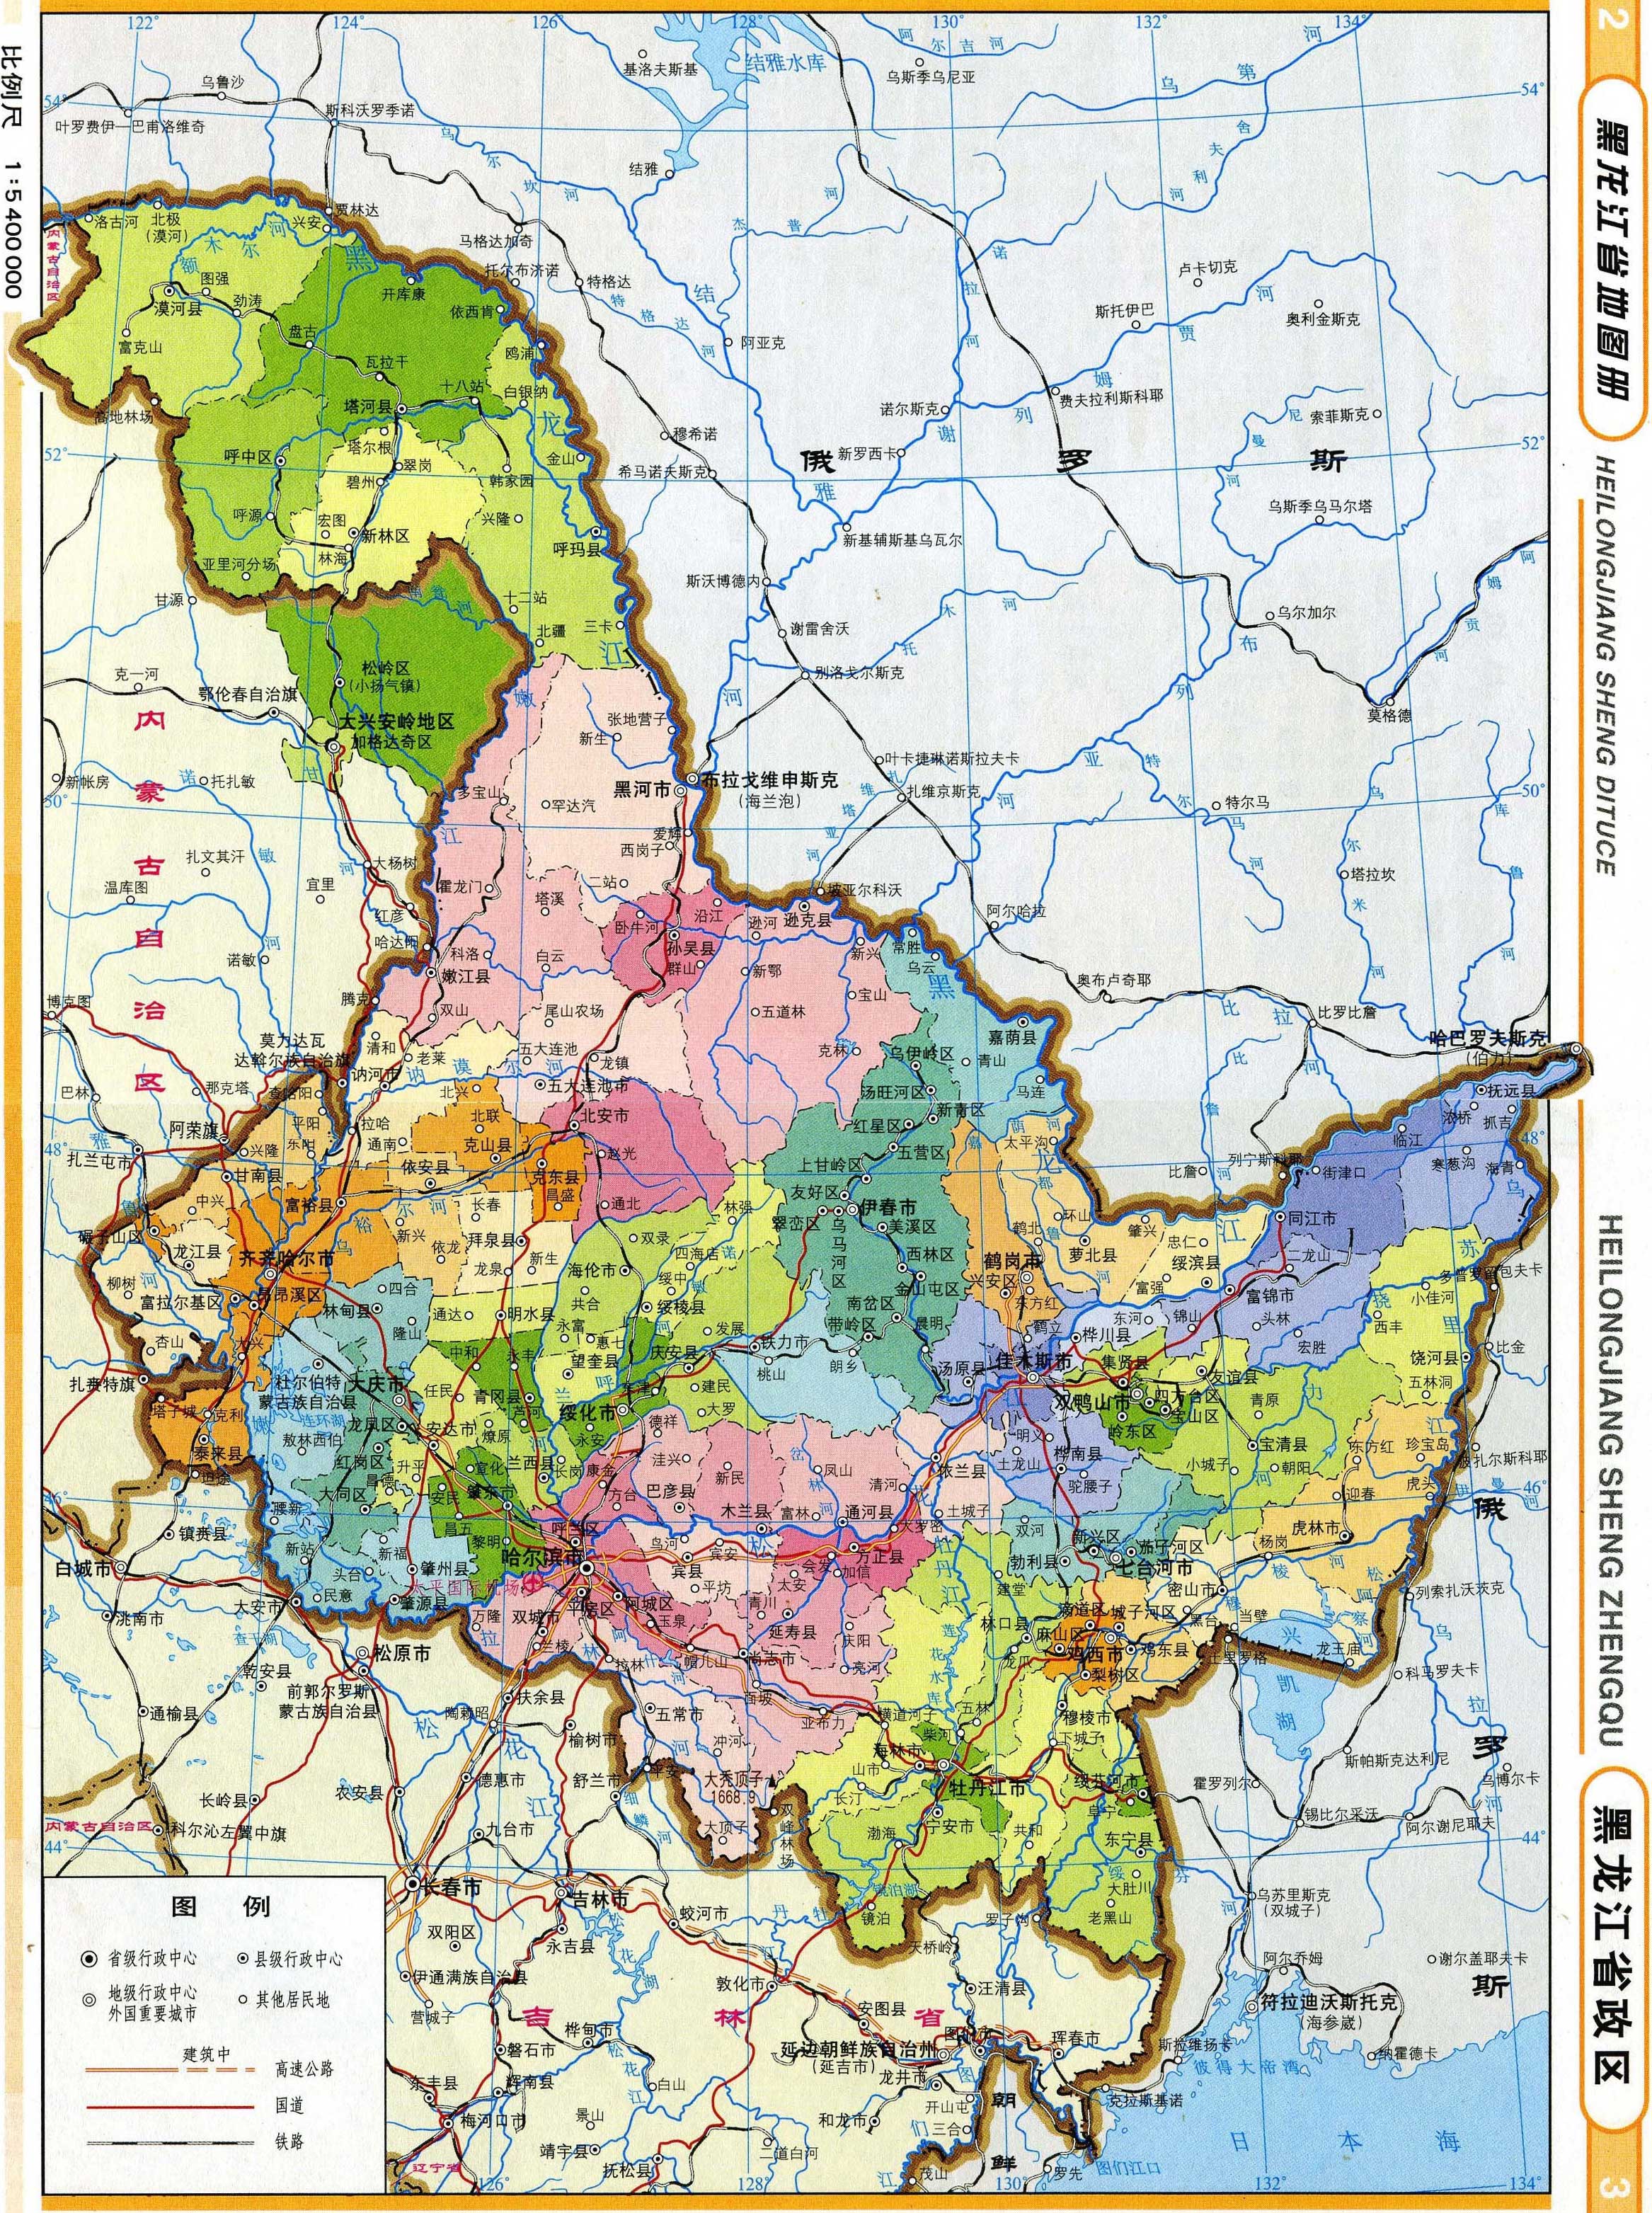 由于特殊的地理位置,历史上的黑龙江省区划也在不断调整,直到1954年才